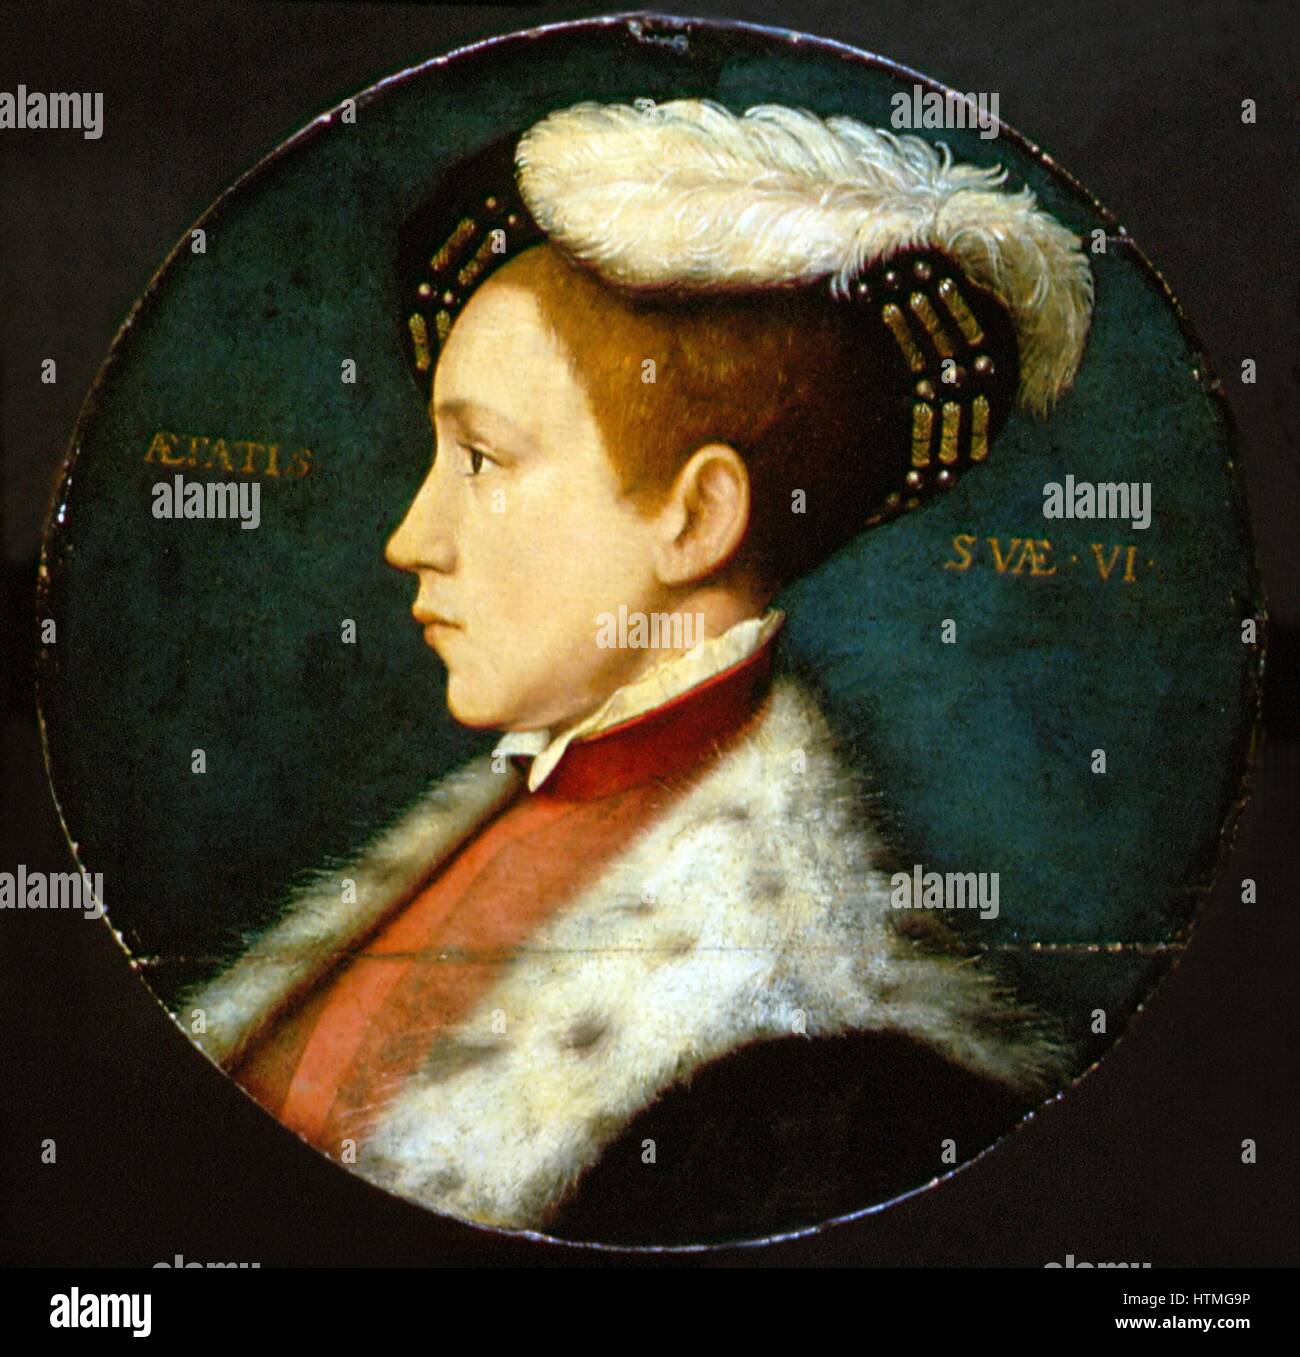 Eduard VI. (1537-1553) König von England und Irland von 1547. Sohn von Heinrich VIII. und seiner dritten Frau Jane Seymour. Immer ein kränkliches Kind, er starb eines natürlichen Todes. Porträt von Holbein. Stockfoto